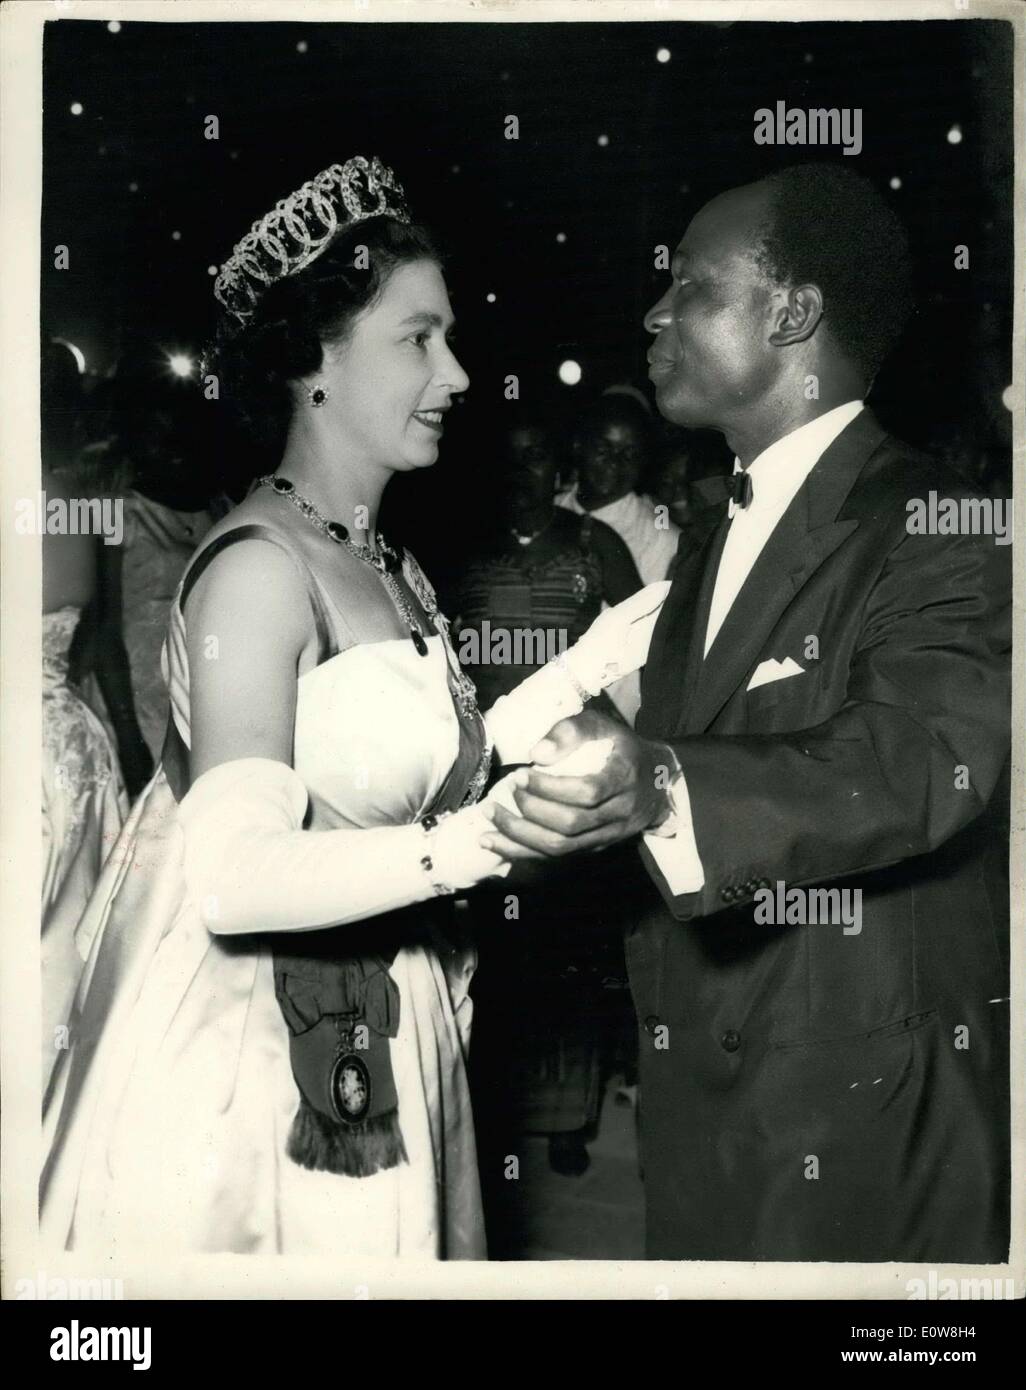 Philibet Excerpts — On 18 November 1961, the Queen danced Ghanaian